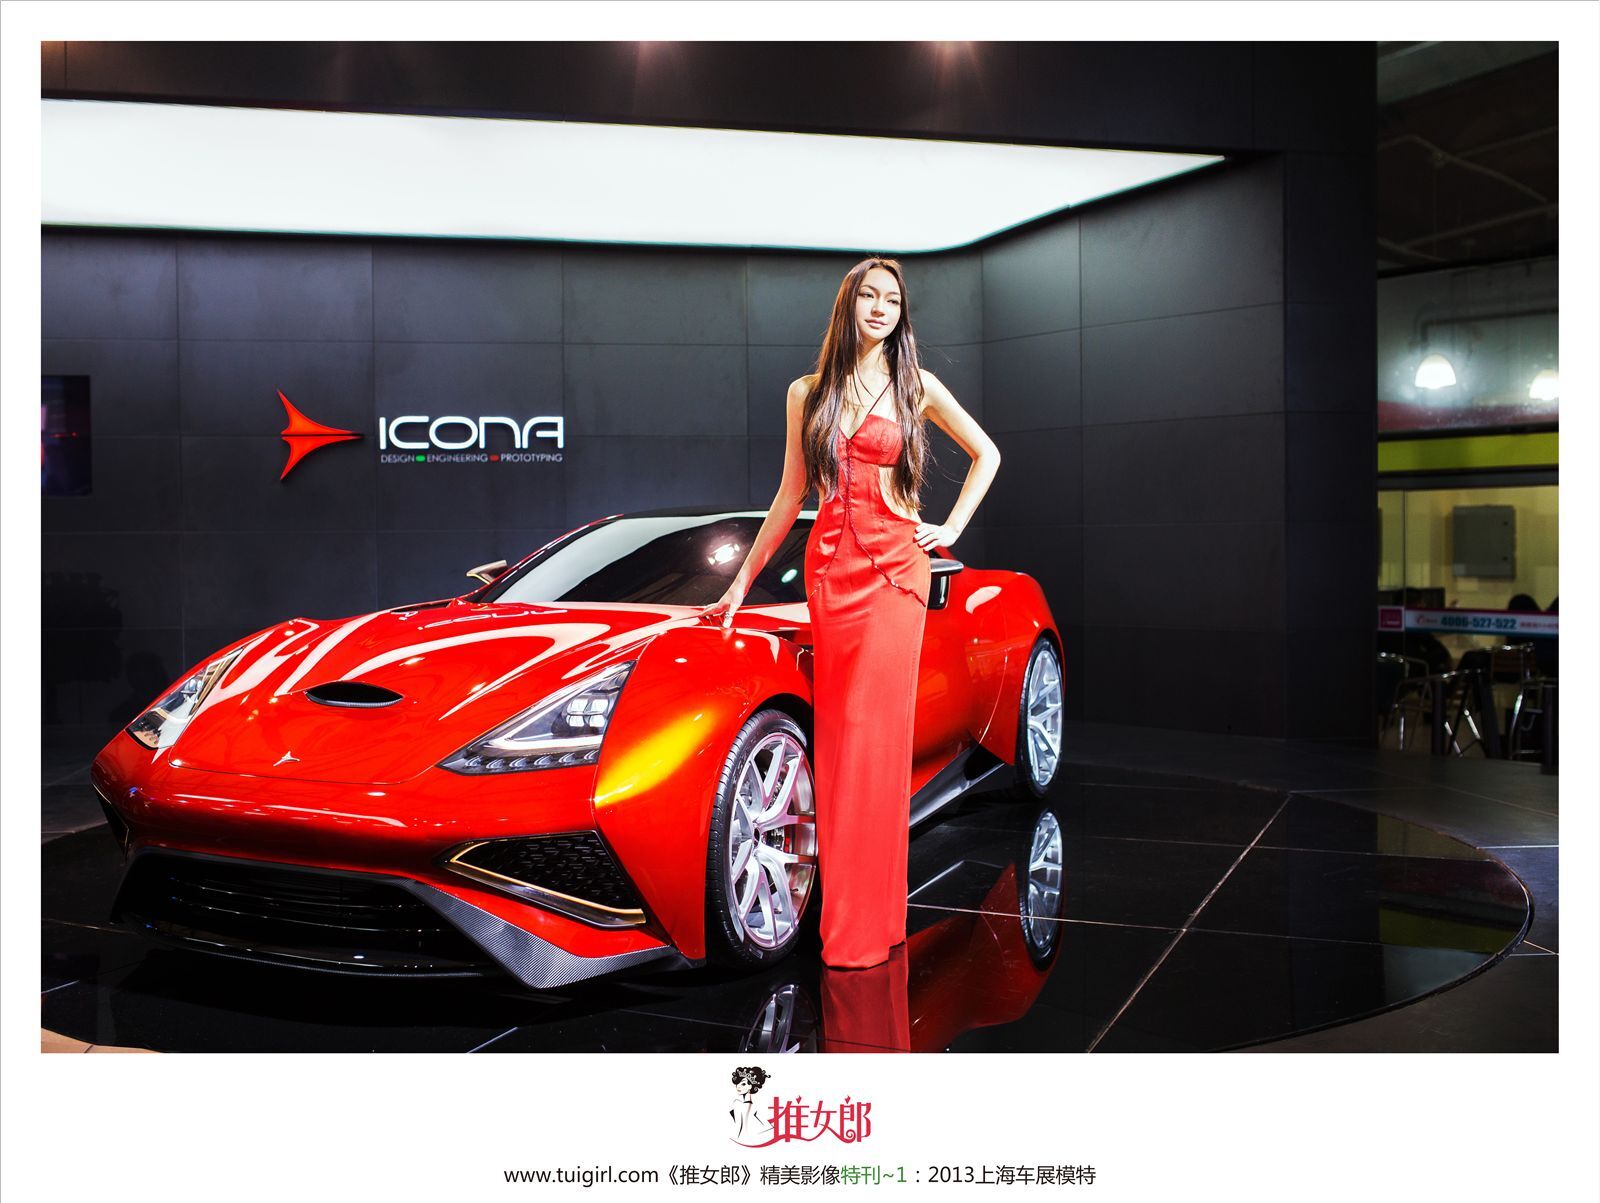 [tweet girl] 2013.04.22 Shanghai auto show special issue Li Yingzhi, Xin Nan, Zhao Qian